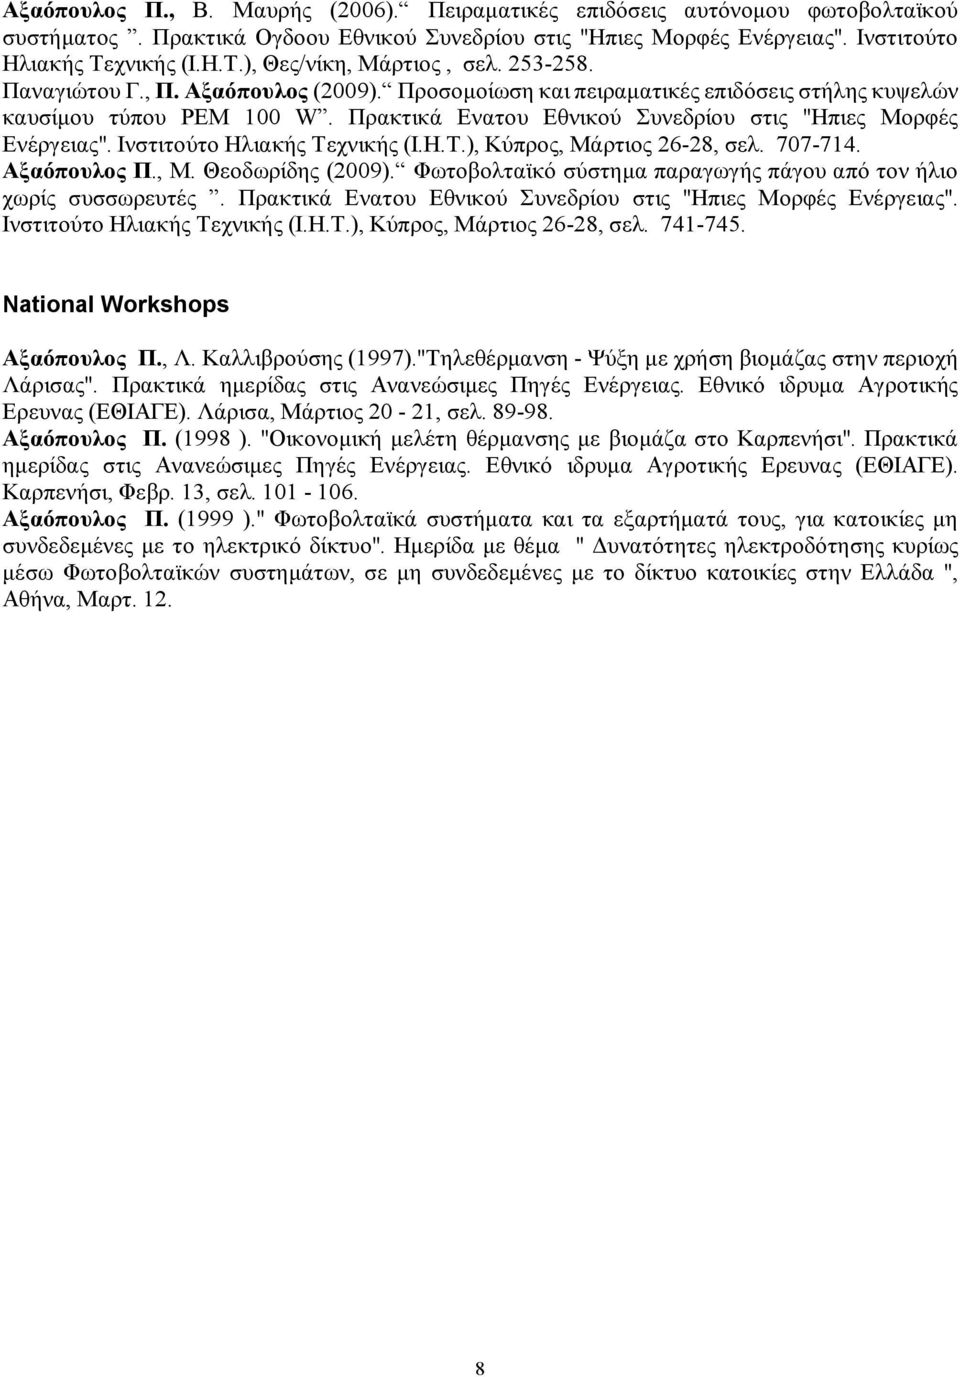 Πρακτικά Ενατου Εθνικού Συνεδρίου στις "Ηπιες Μορφές Ενέργειας". Ινστιτούτο Ηλιακής Τεχνικής (I.H.T.), Κύπρος, Μάρτιος 26-28, σελ. 707-714. Αξαόπουλος Π., M. Θεοδωρίδης (2009).